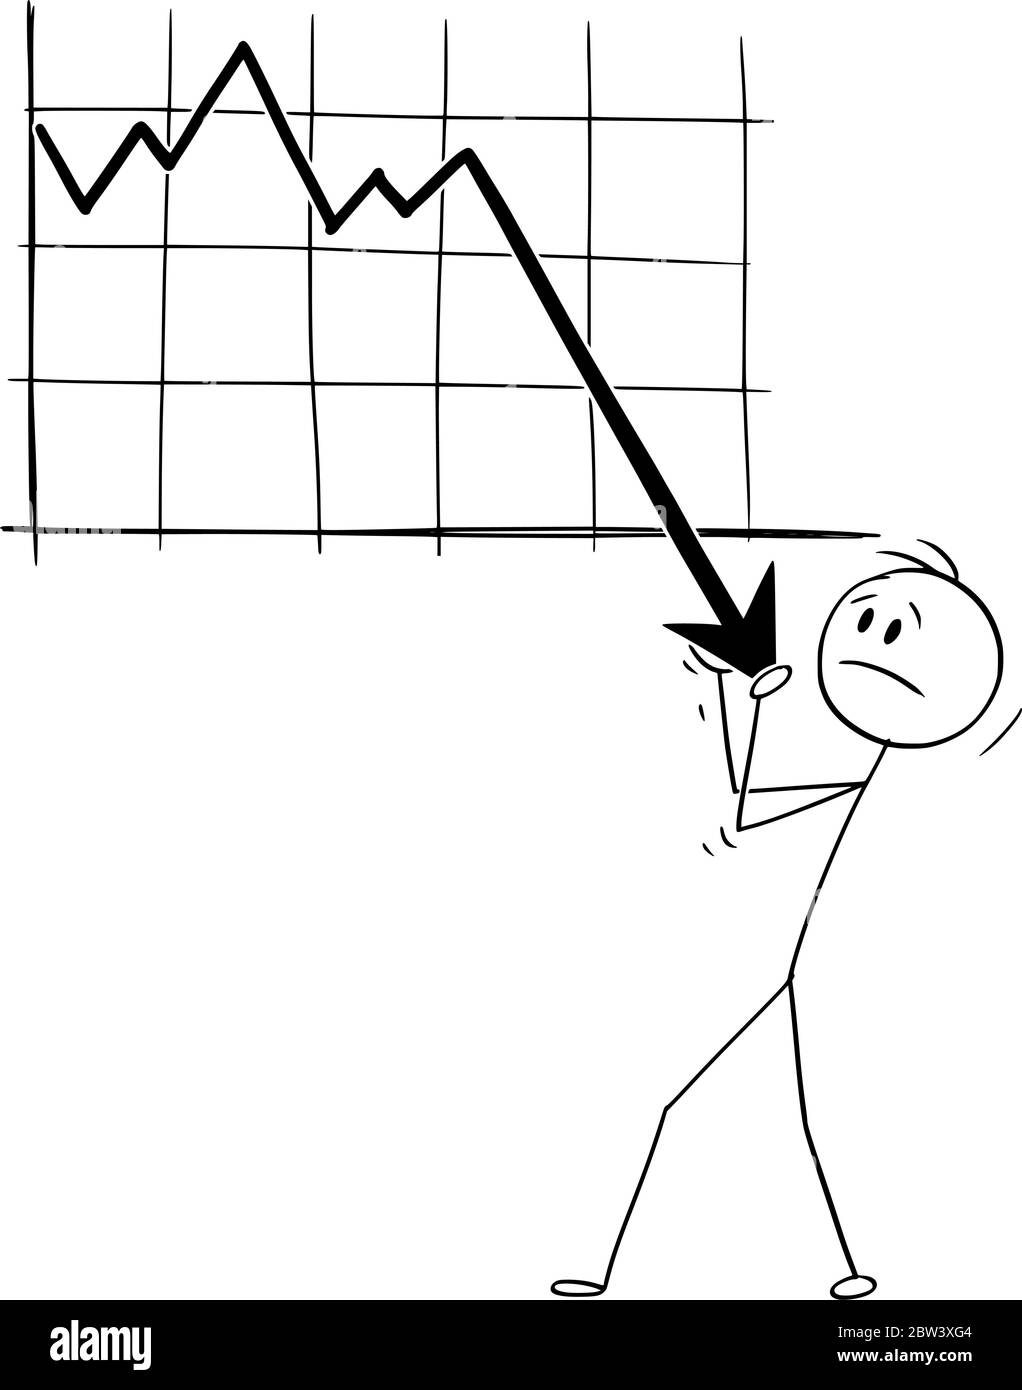 Vektor Cartoon Stick Figur Zeichnung konzeptionelle Illustration von Mann oder Geschäftsmann versuchen, rückläufige Wirtschafts- oder Finanzgraph zu halten. Konzept der Rezession oder Krise. Stock Vektor